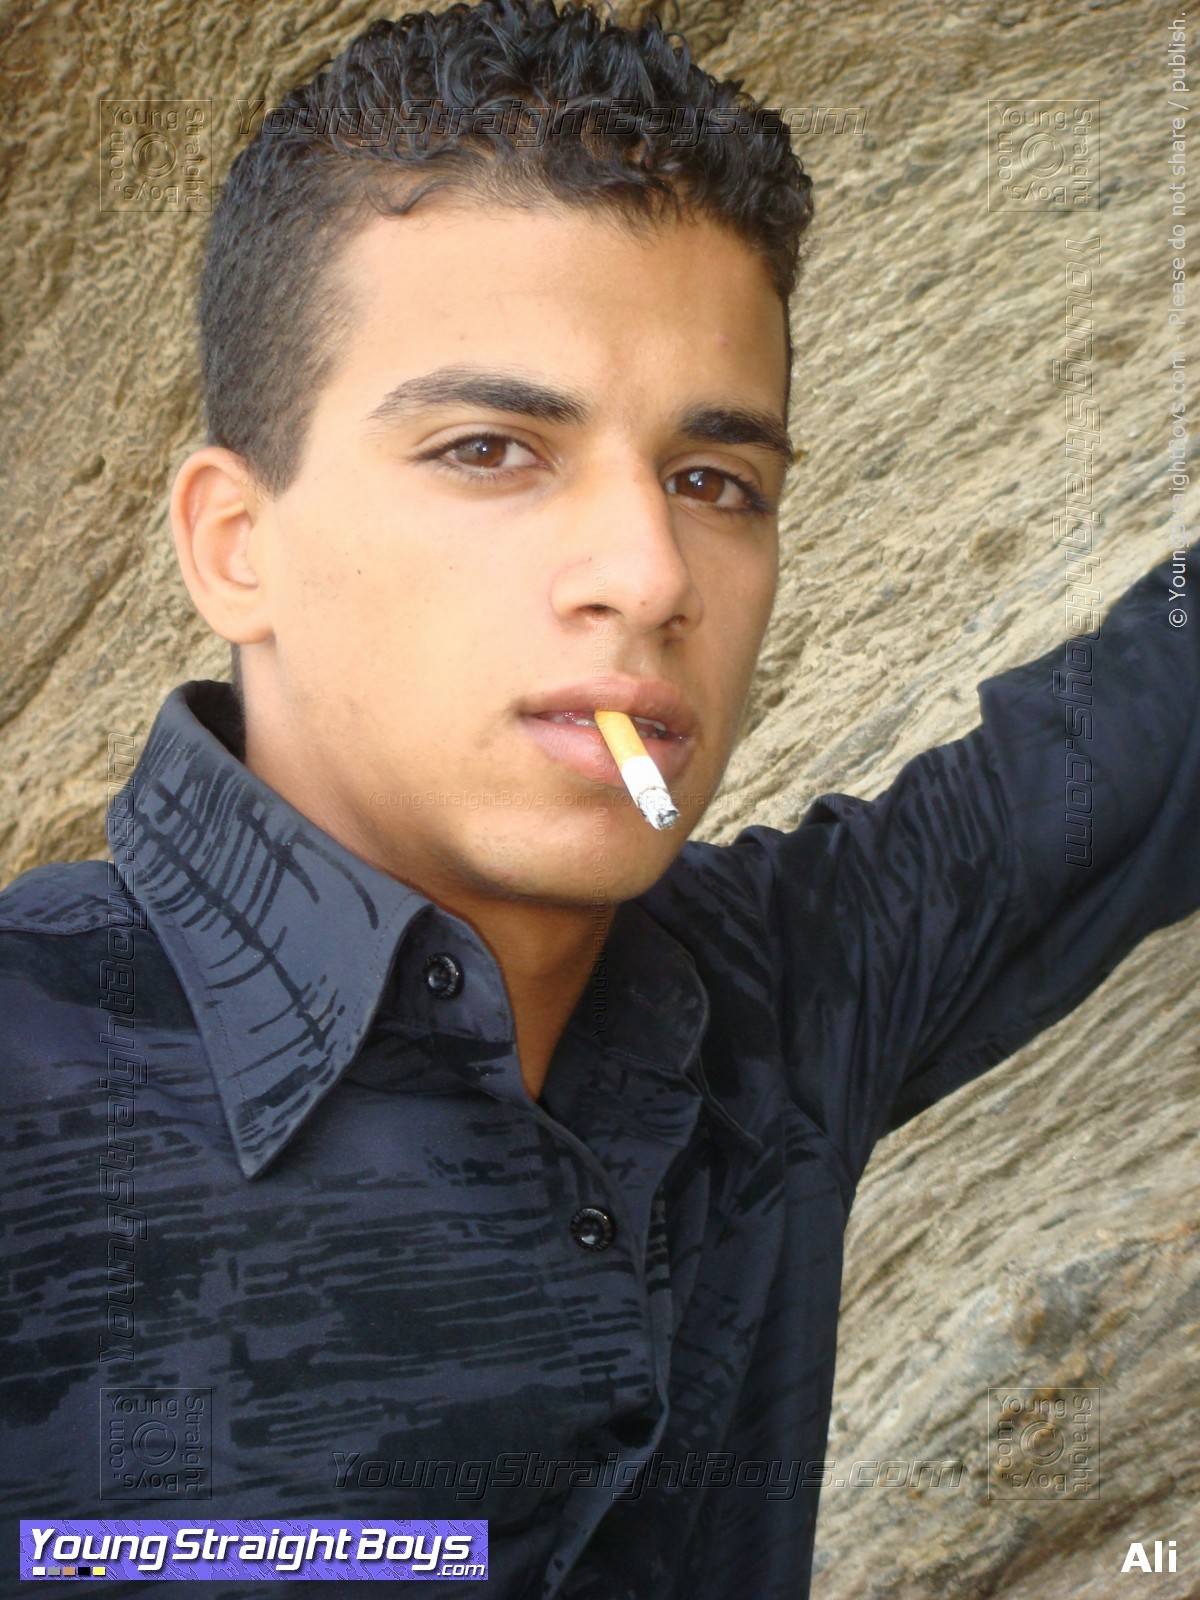 Foto de la cara del joven hetero árabe rebelde Ali fumando un cigarrillo (durante una sesion de fotos en la playa, antes de la sesión de sexo en la habitación del hotel donde podría chuparlo)